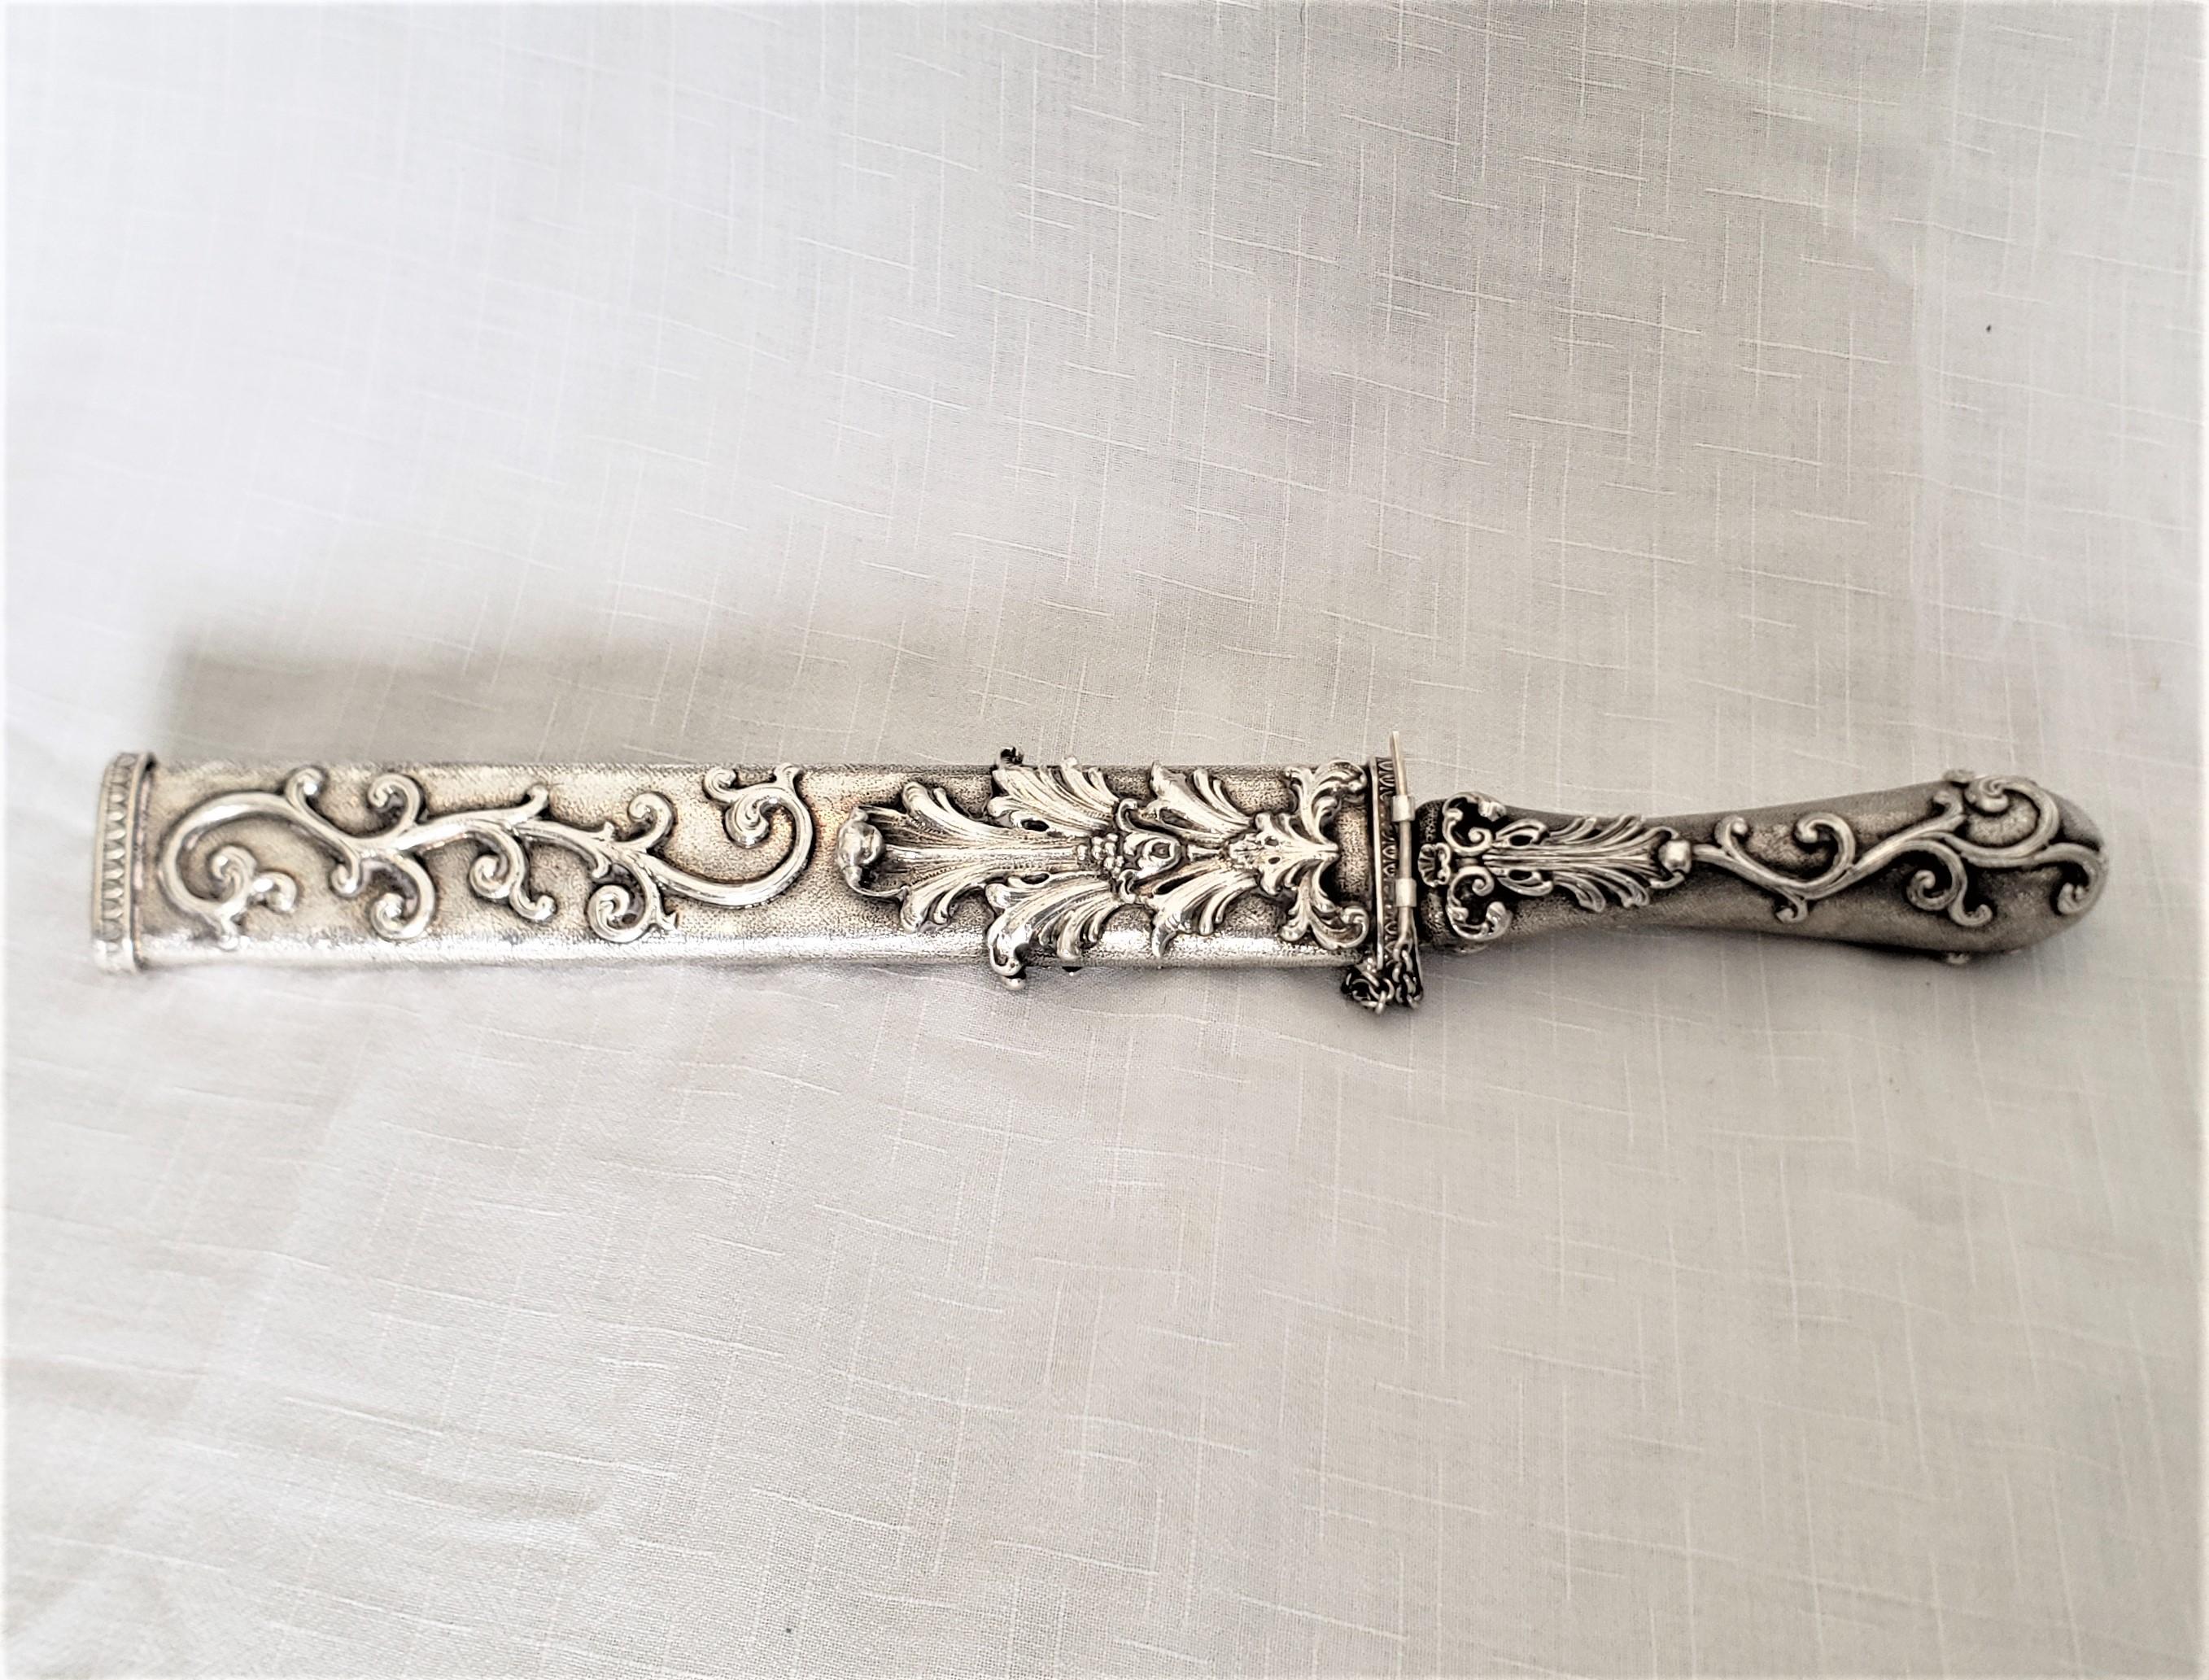 Cet ensemble couteau et fourreau italien de style ancien a été réalisé dans le cadre de la Collection Vera S. Il date d'environ 1920-60 et a été réalisé dans un style néo-Renaissance. L'ensemble est très décoratif et peut avoir été produit comme un